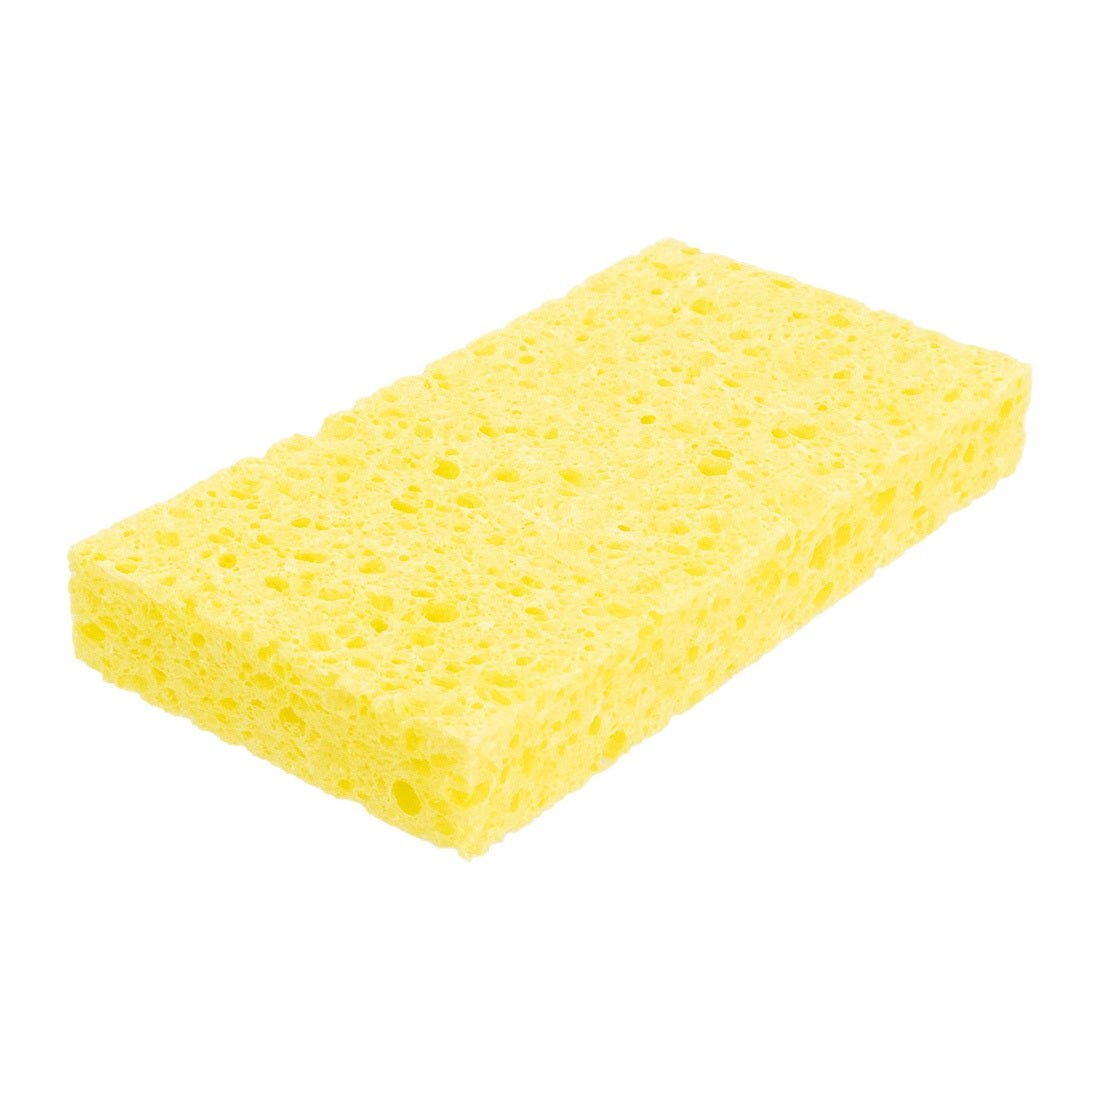 Basics Non-Scratch Sponges, 6-Pack